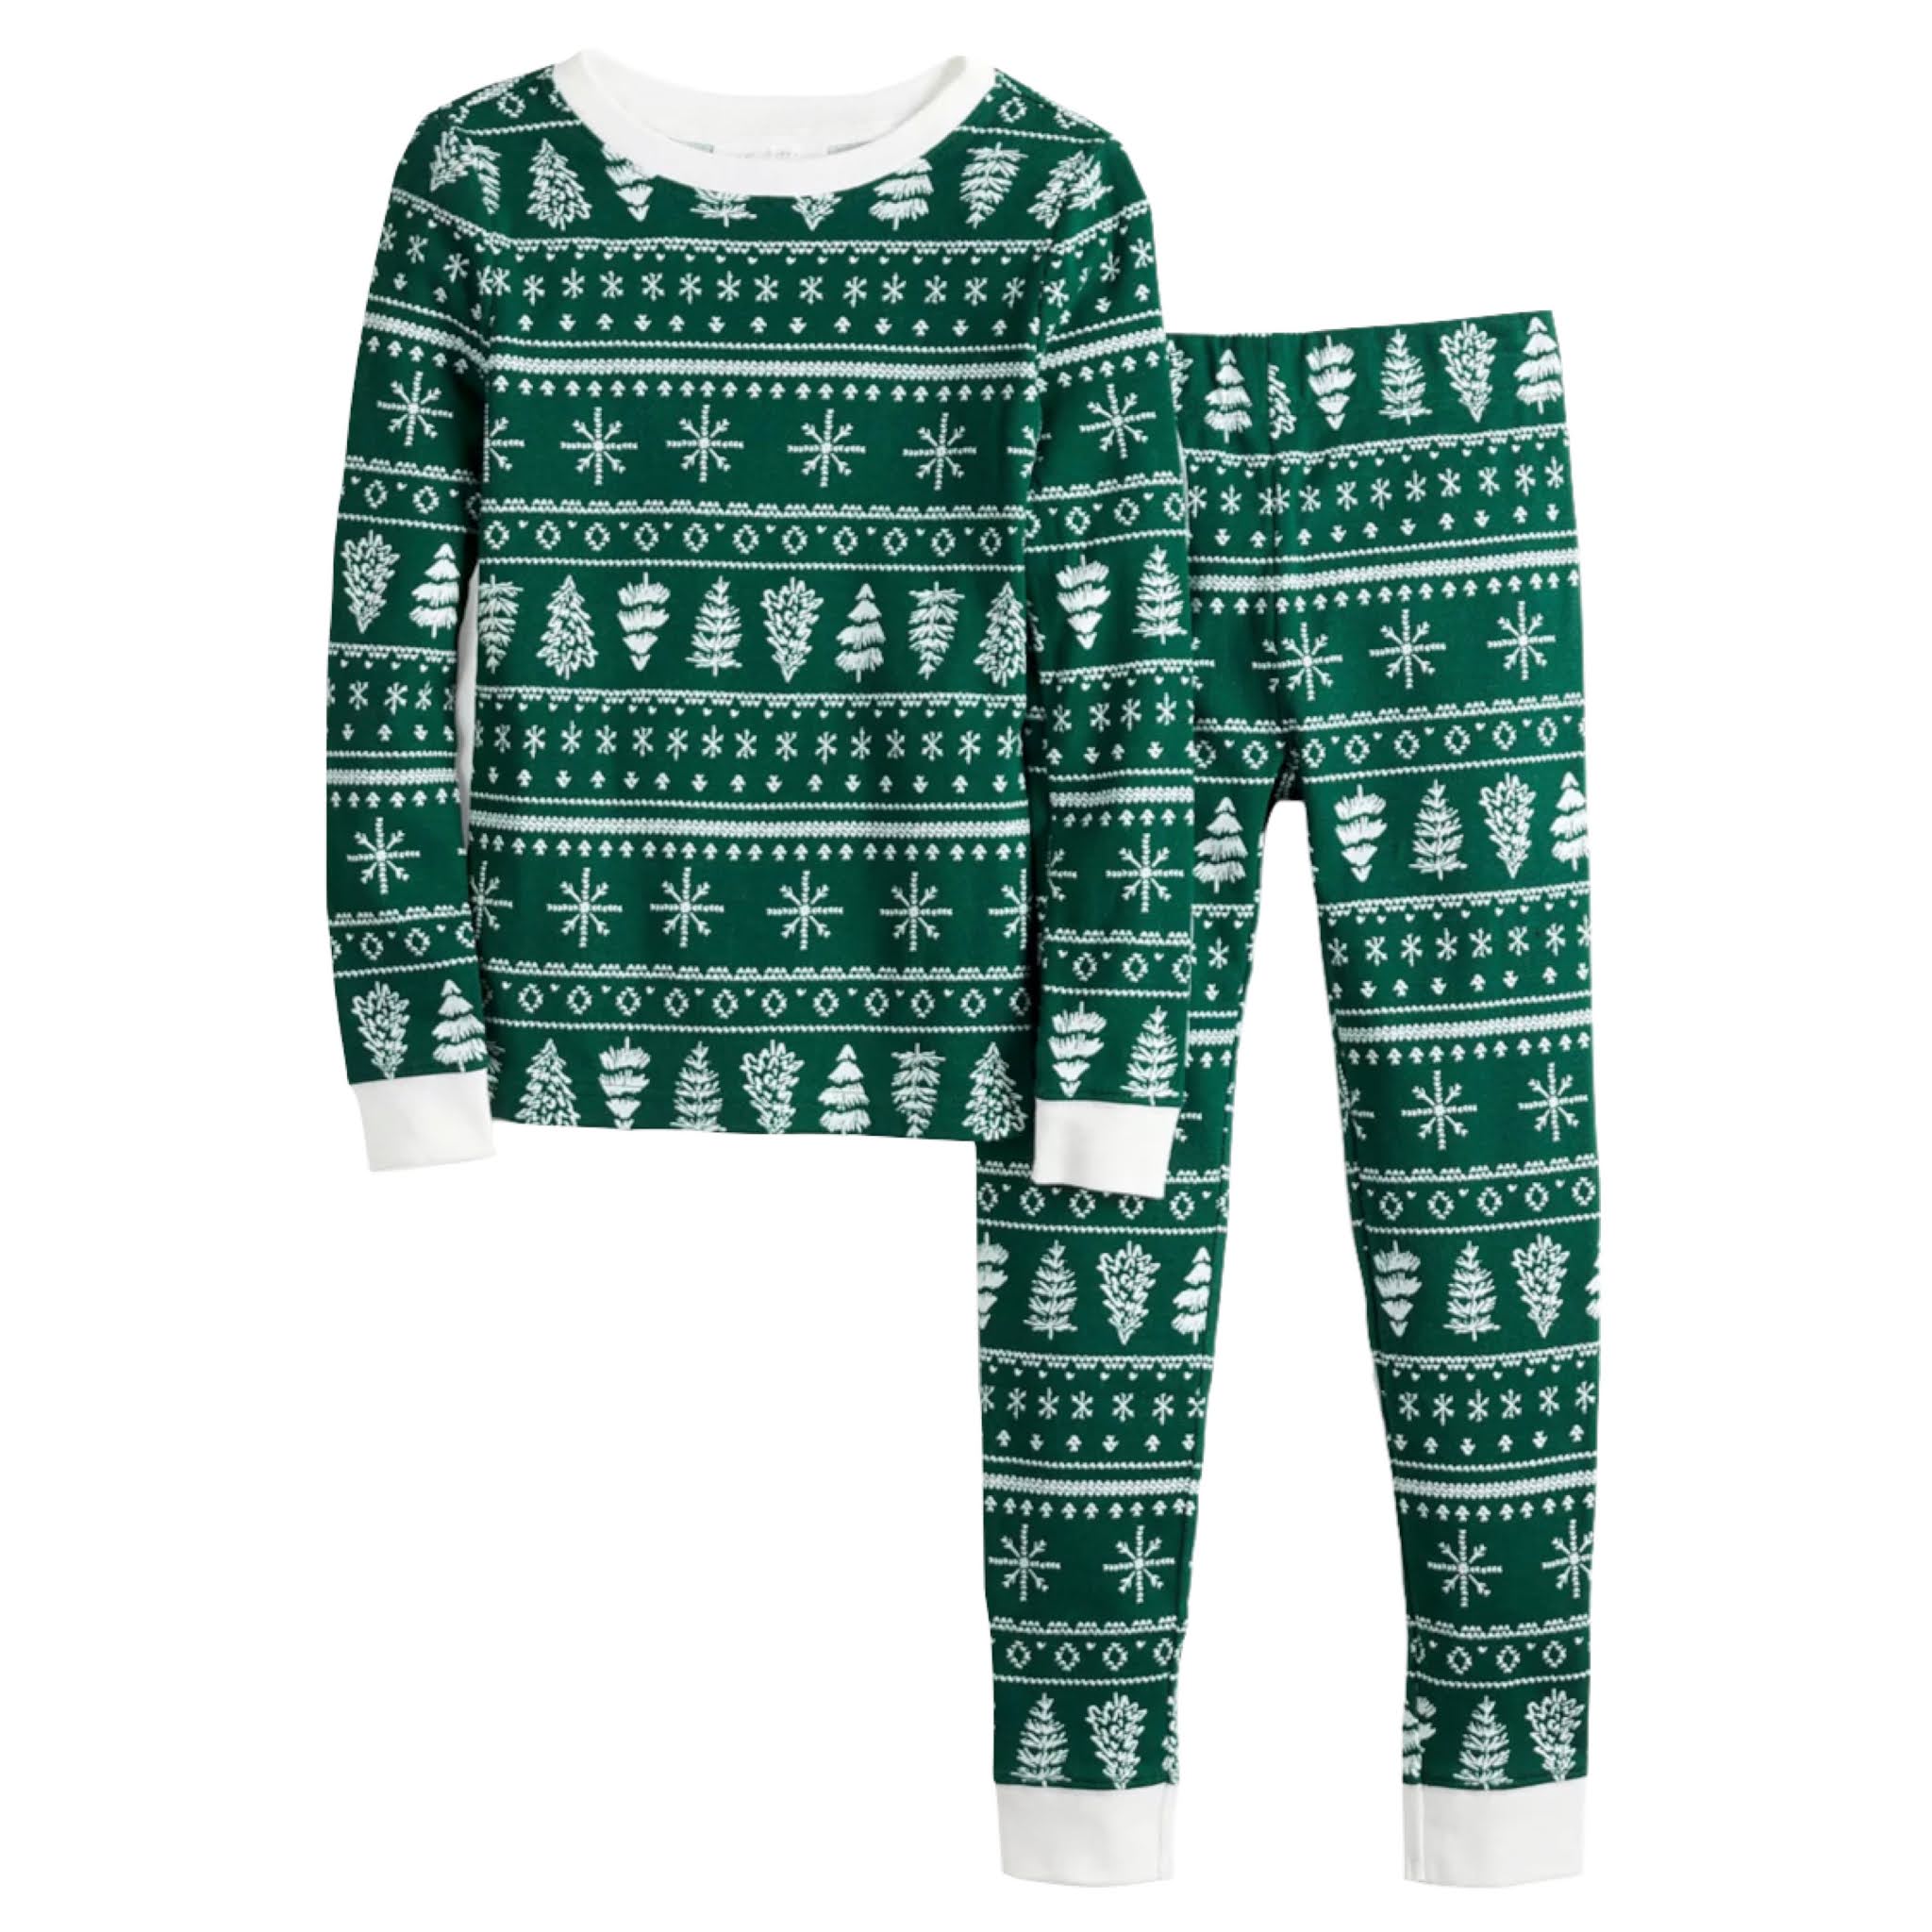 Kids Tree & Snowflake Holiday Pajamas from LC Jammies